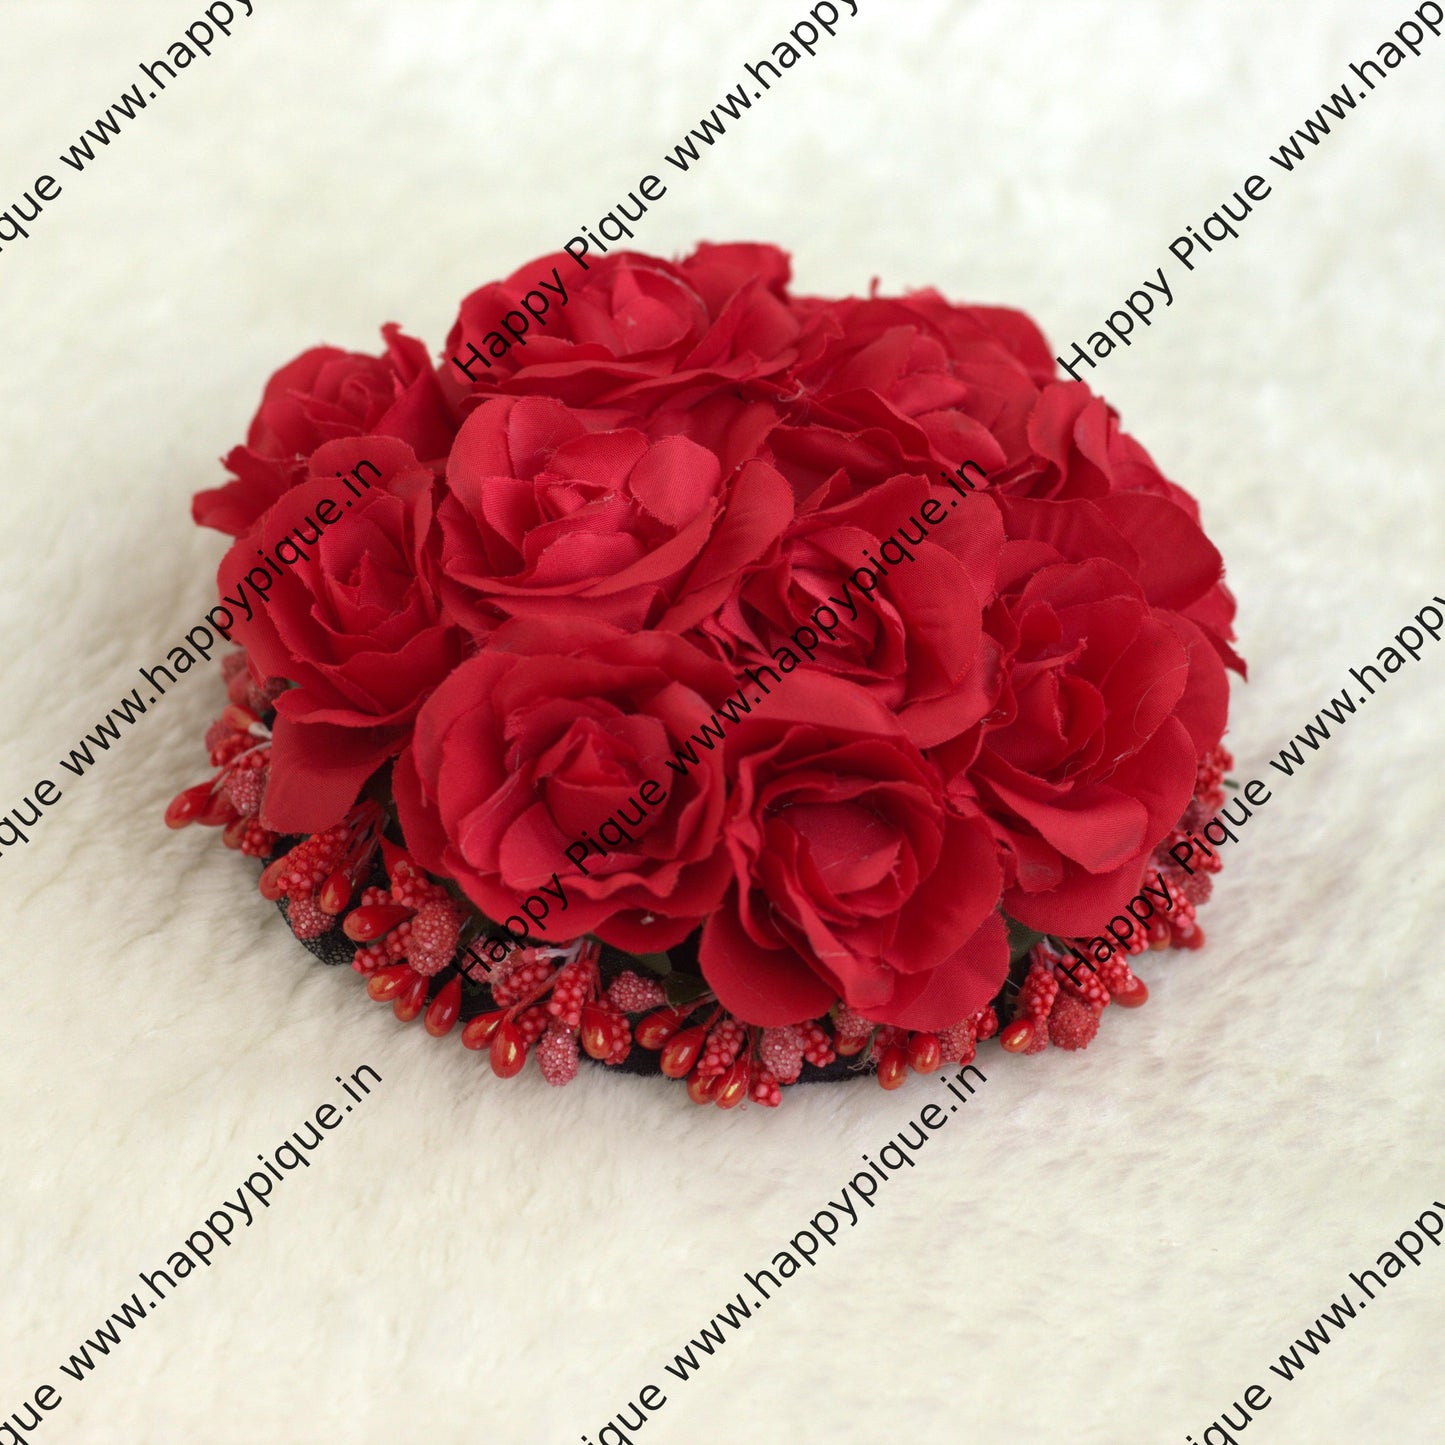 Real Look Alike Rose Artificial Flower Bridal Juda Bun